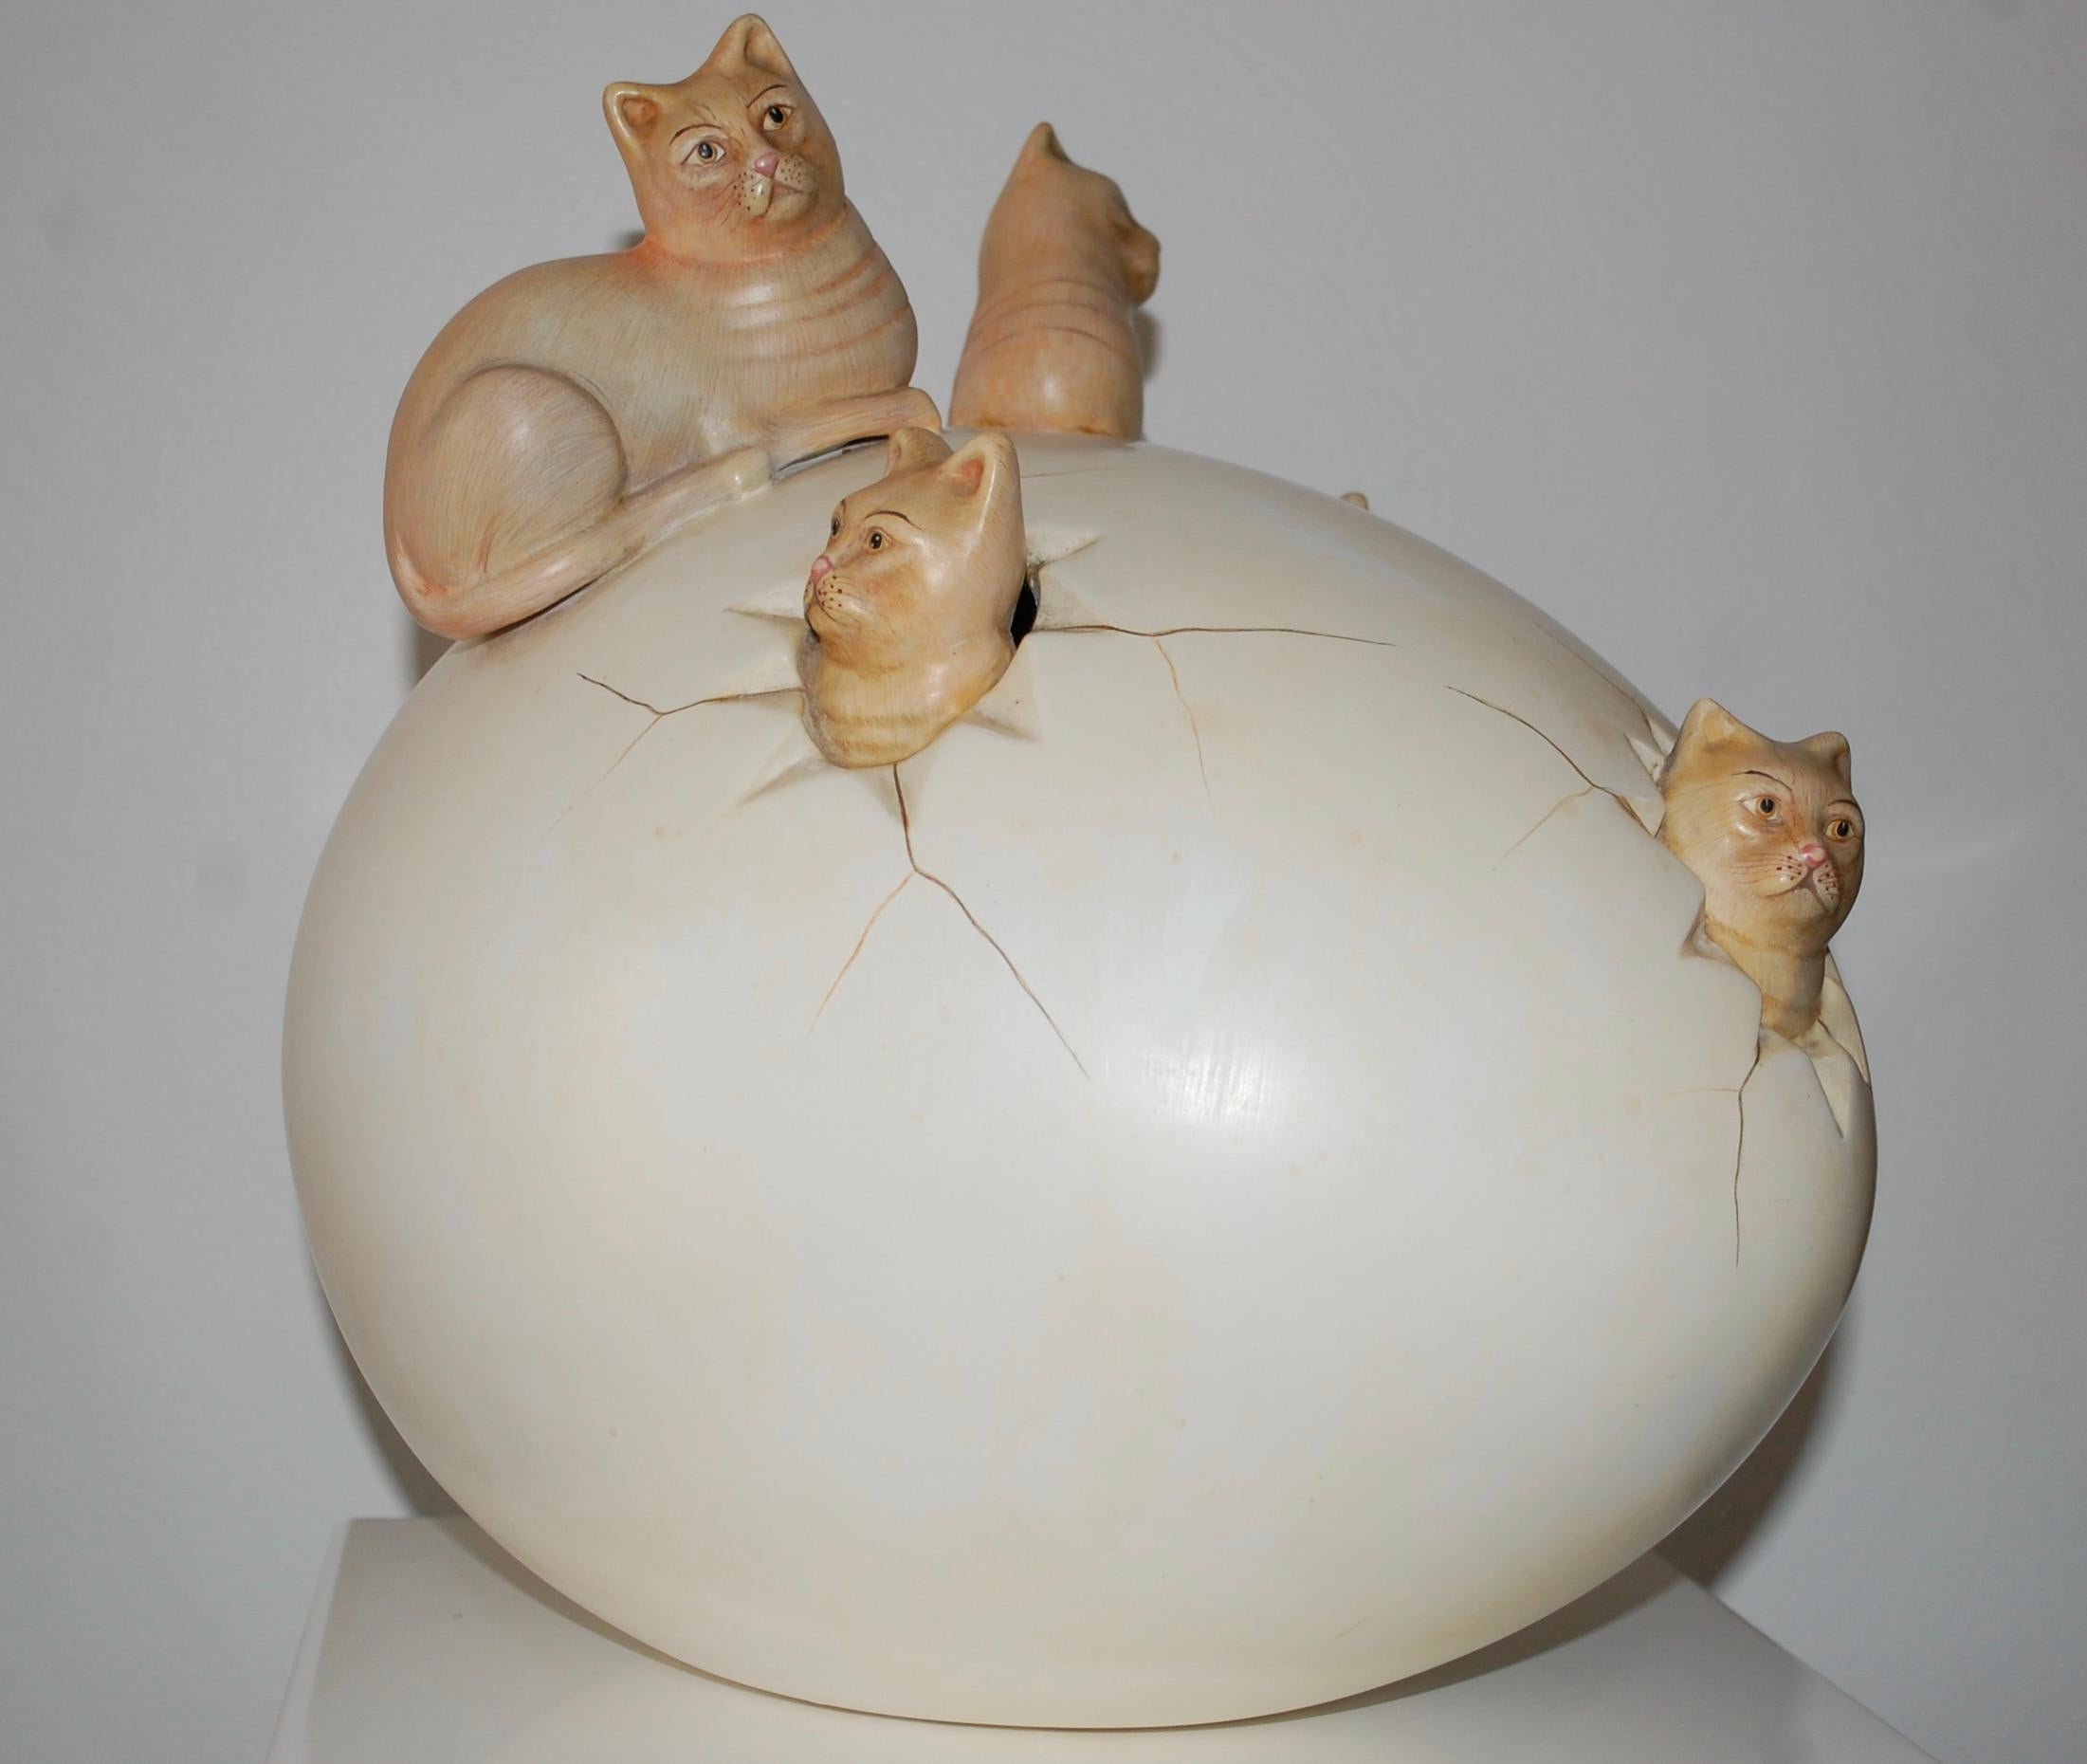 Katzen schlüpfen aus dem Ei.
Keramische Skulptur, vom Künstler signiert.
Sergio Bustamante ist ein mexikanischer Künstler und Bildhauer. Bustamante wurde 1949 in Culiacan, Sinaloa, geboren und studierte Architektur an der Universität von